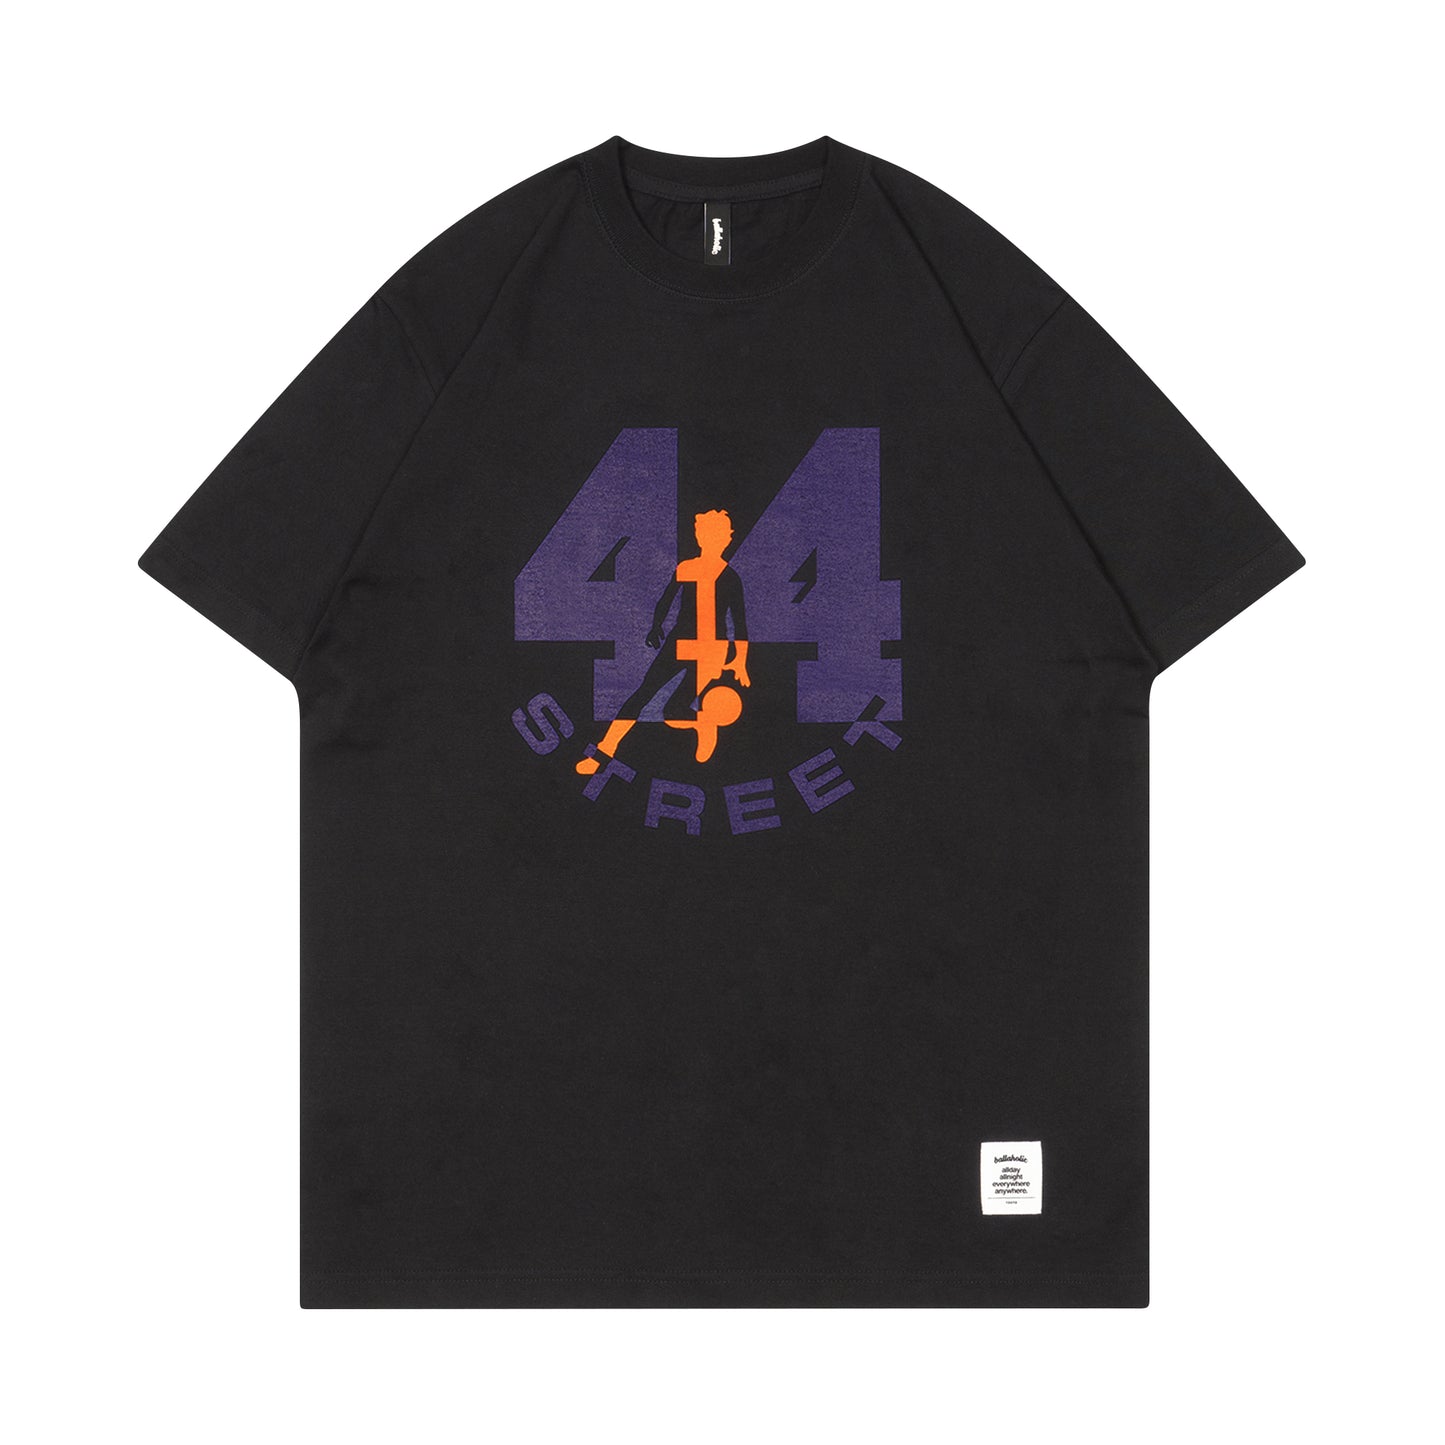 44STREET Tee (black/purple/orange)